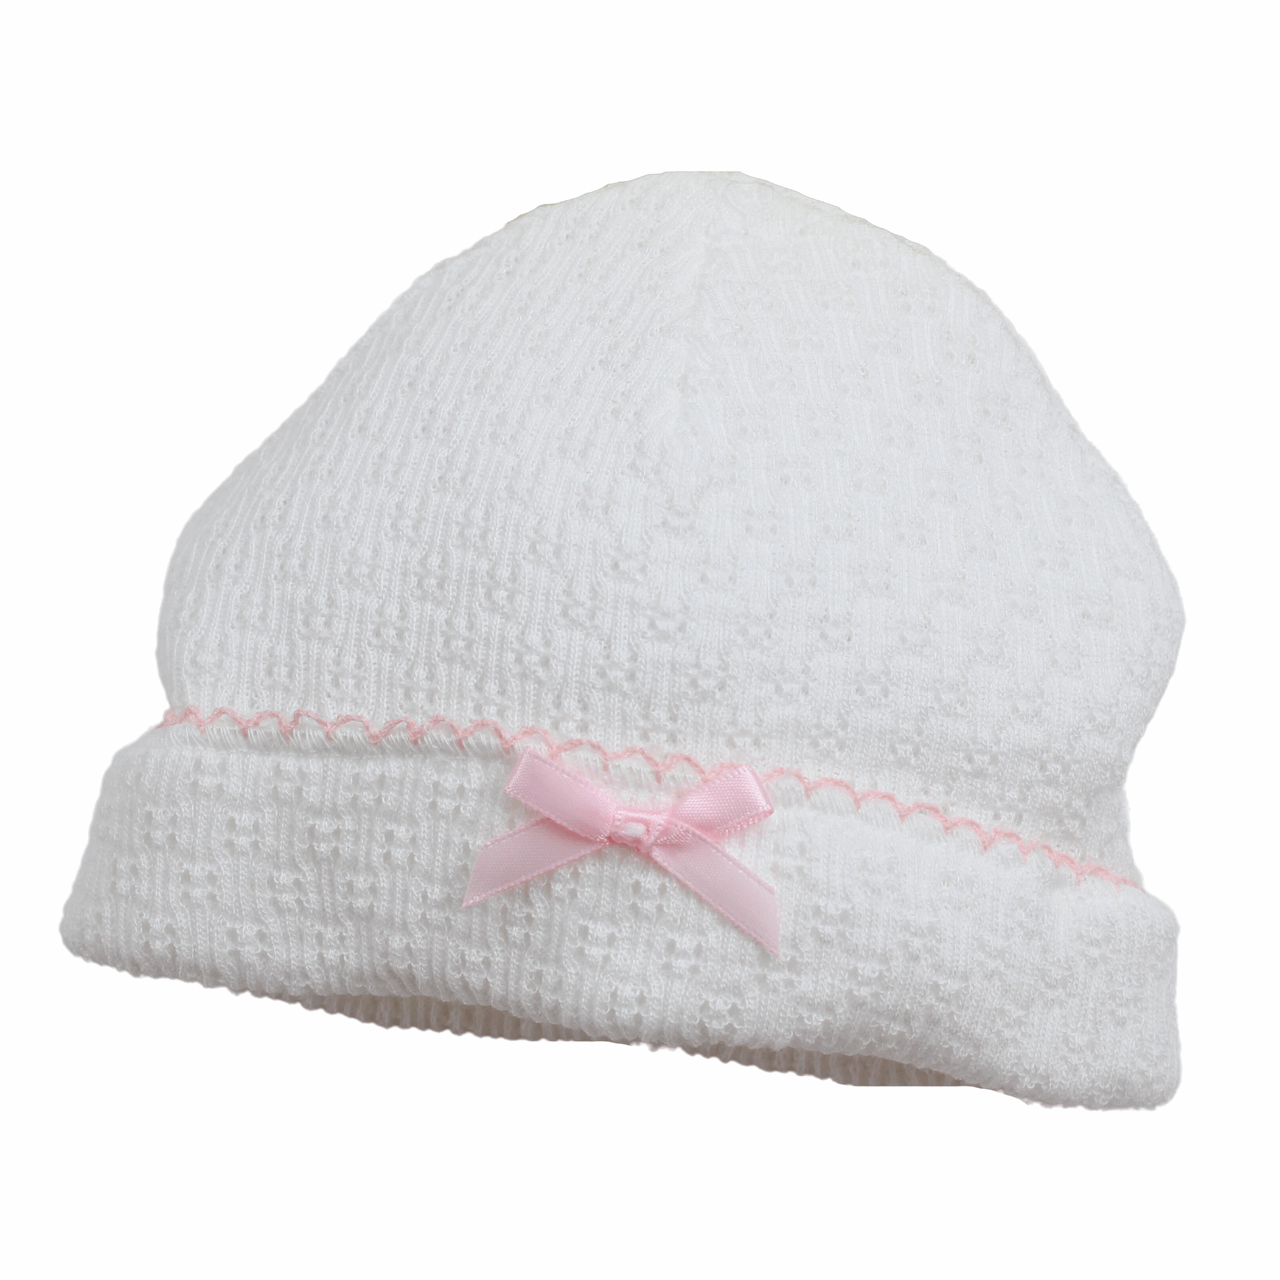 Baby Girls White & Pink Take Home Hat